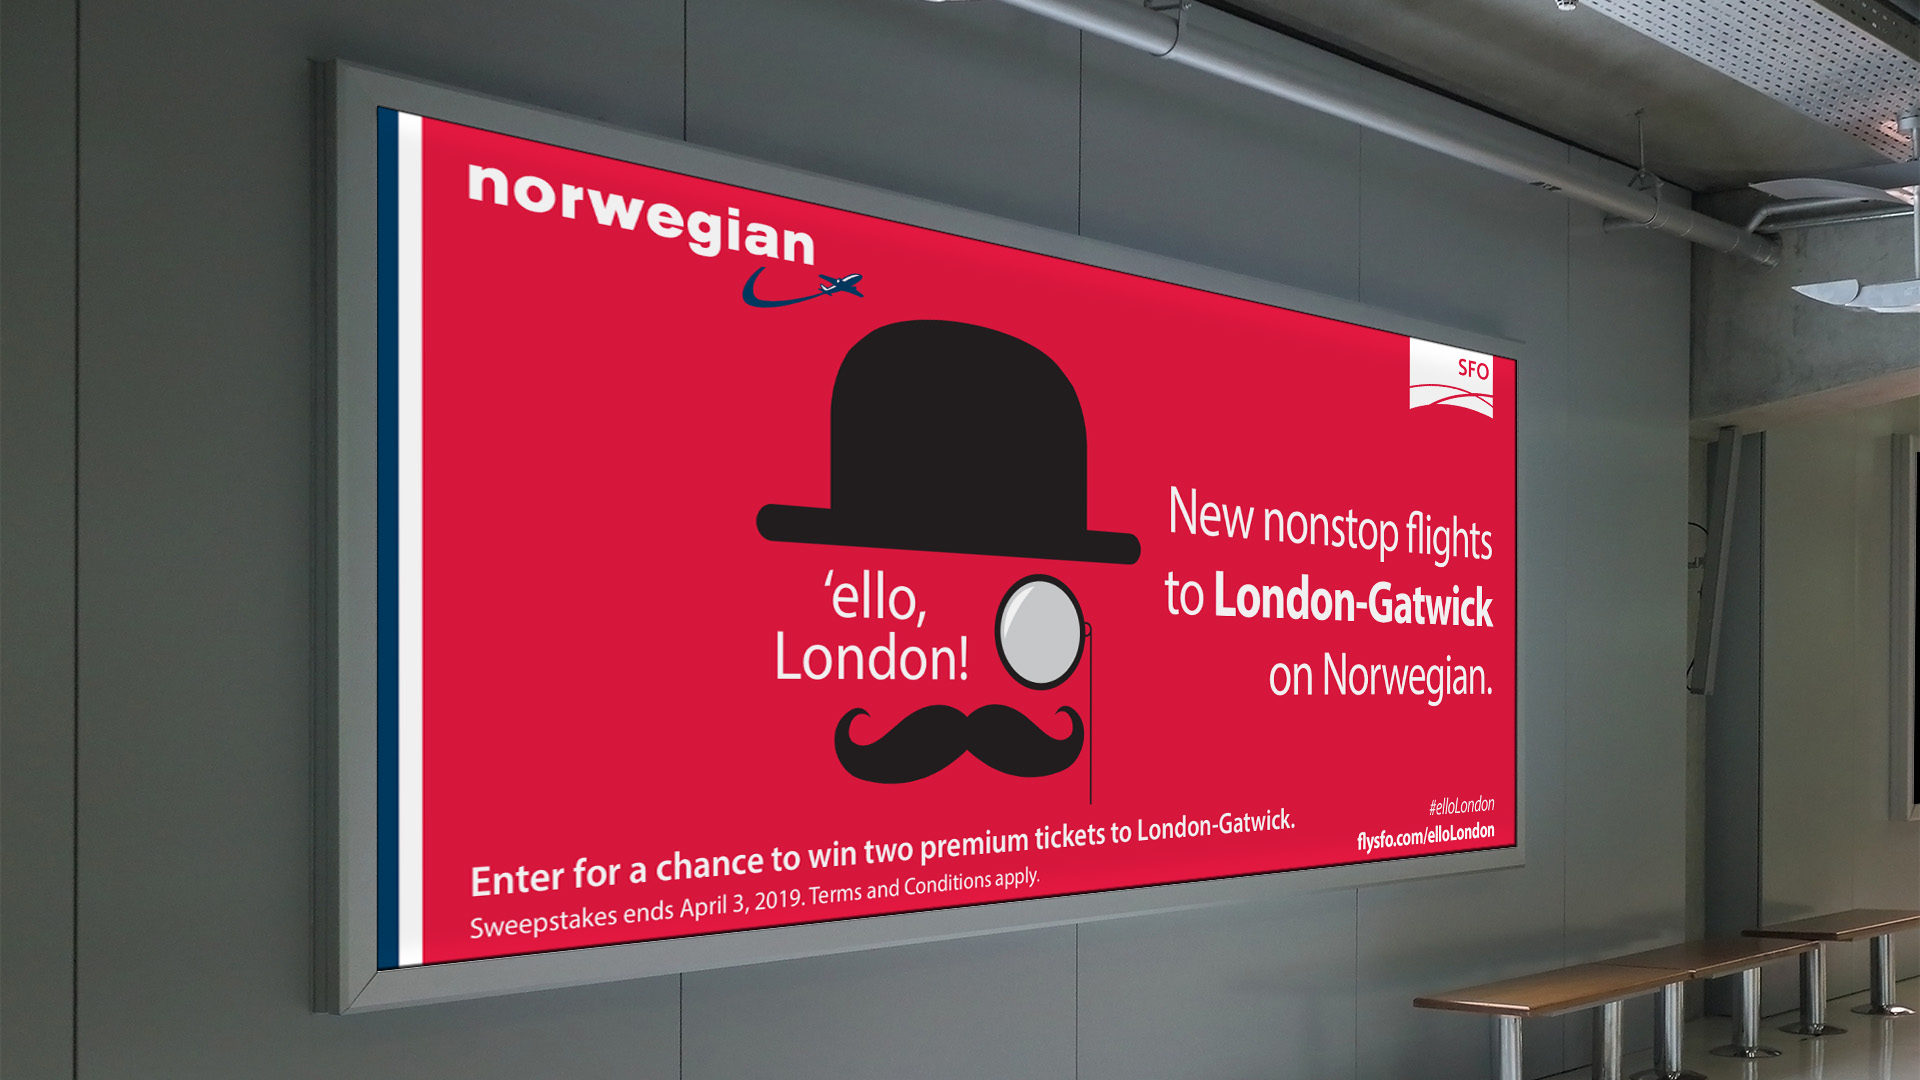 Indoor Ad: New nonstop flights to London-Gatwick on Norwegian. 'ello London!